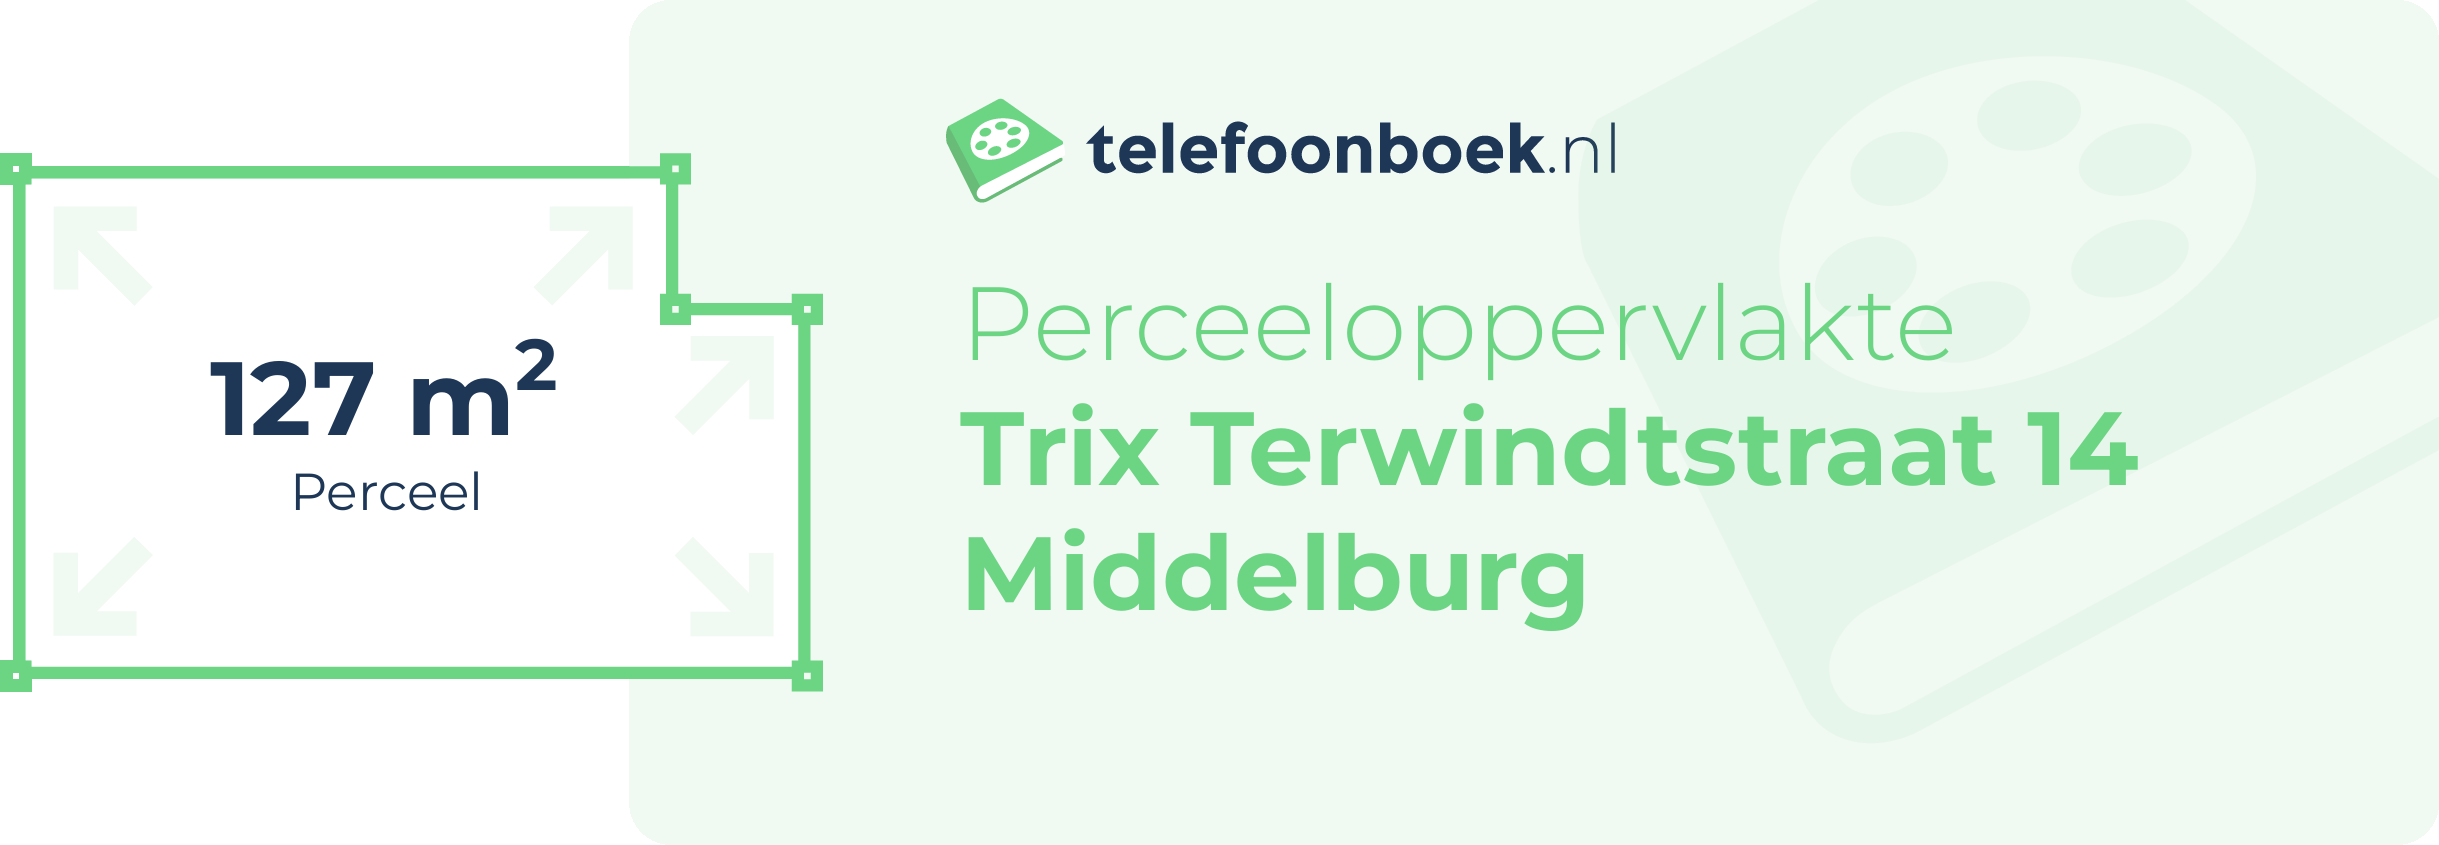 Perceeloppervlakte Trix Terwindtstraat 14 Middelburg